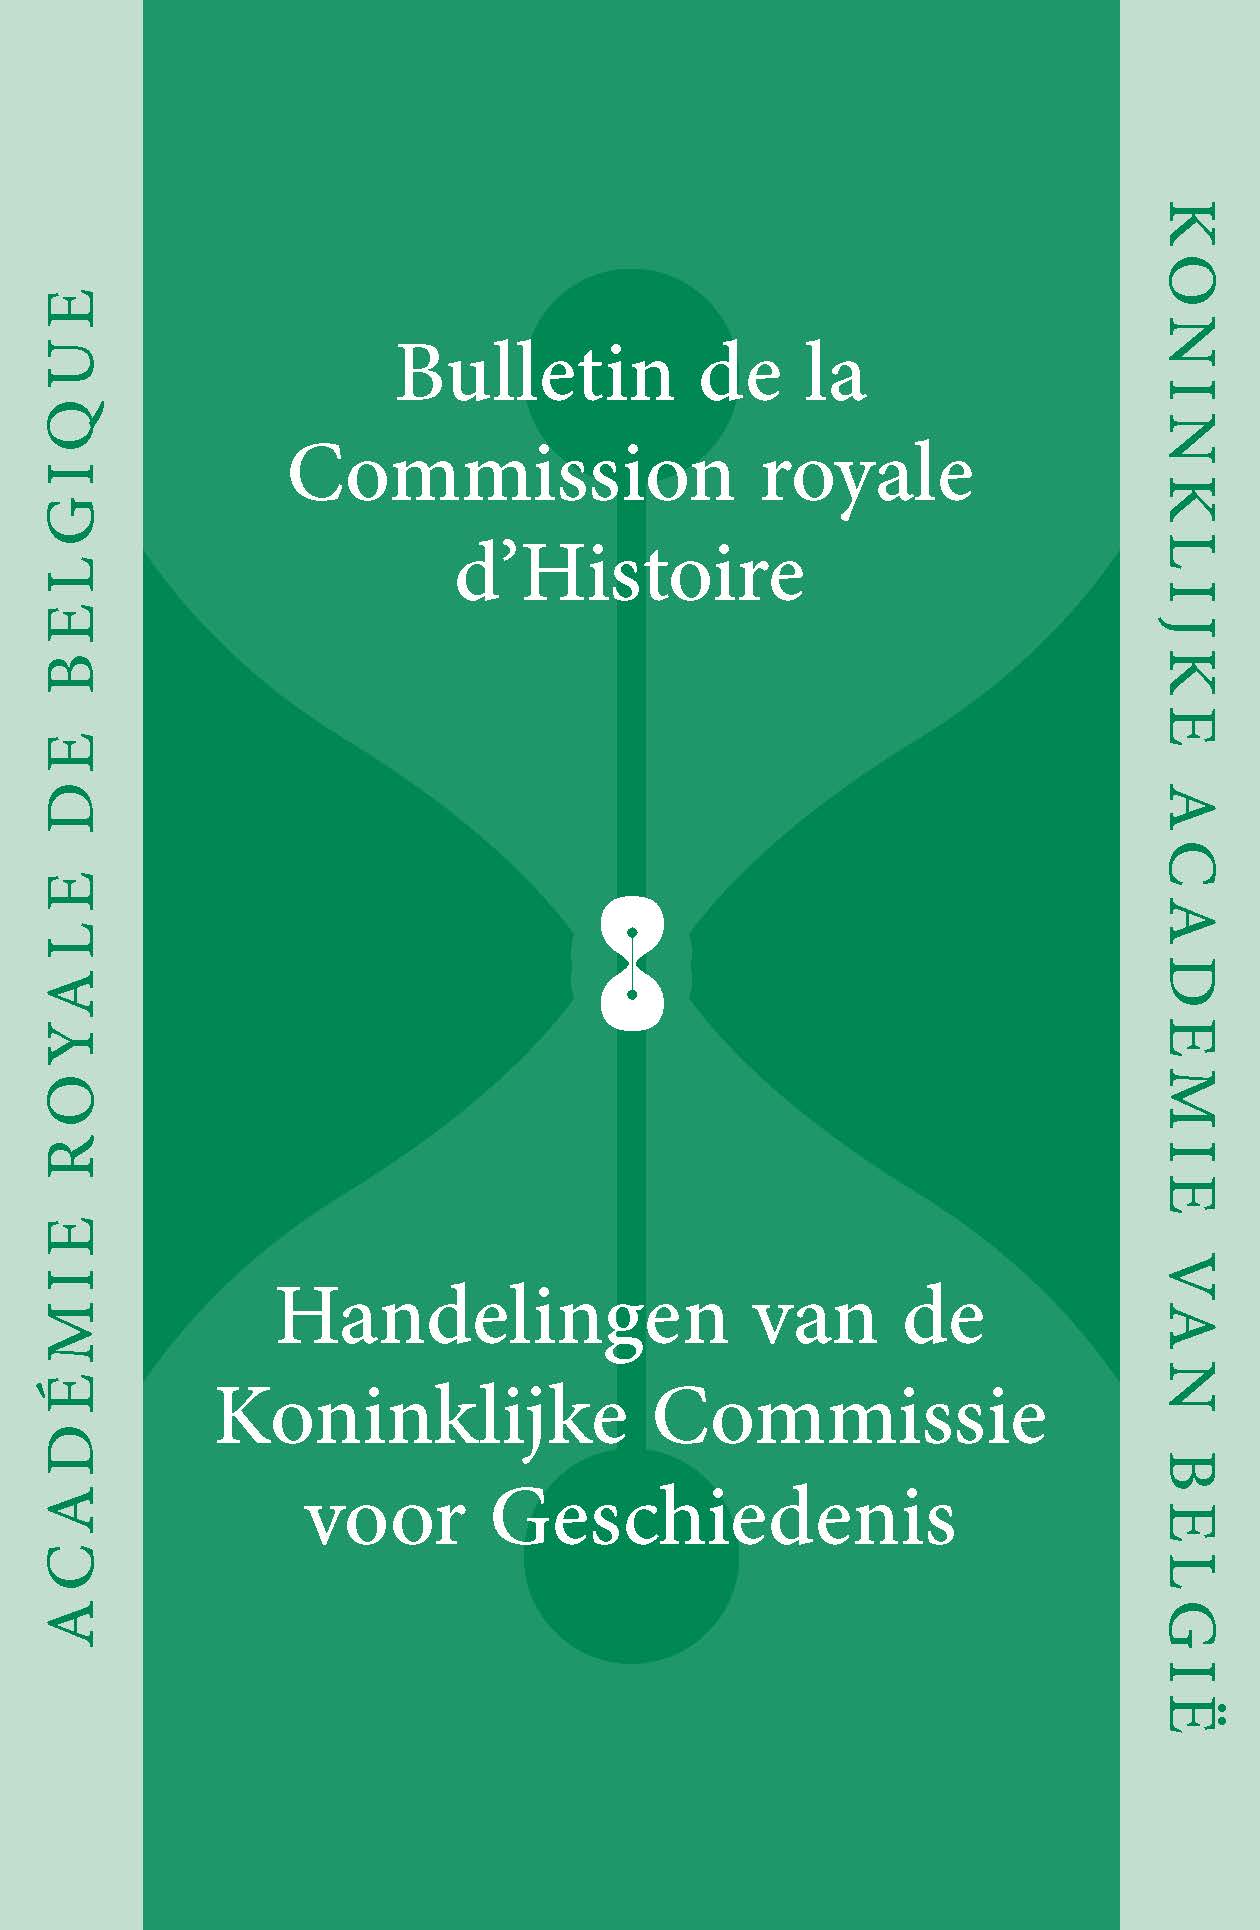 HANDELINGEN VAN DE KONINKLIJKE COMMISSIE VOOR GESCHIEDENIS/BULLETIN, vol. 181, 2015